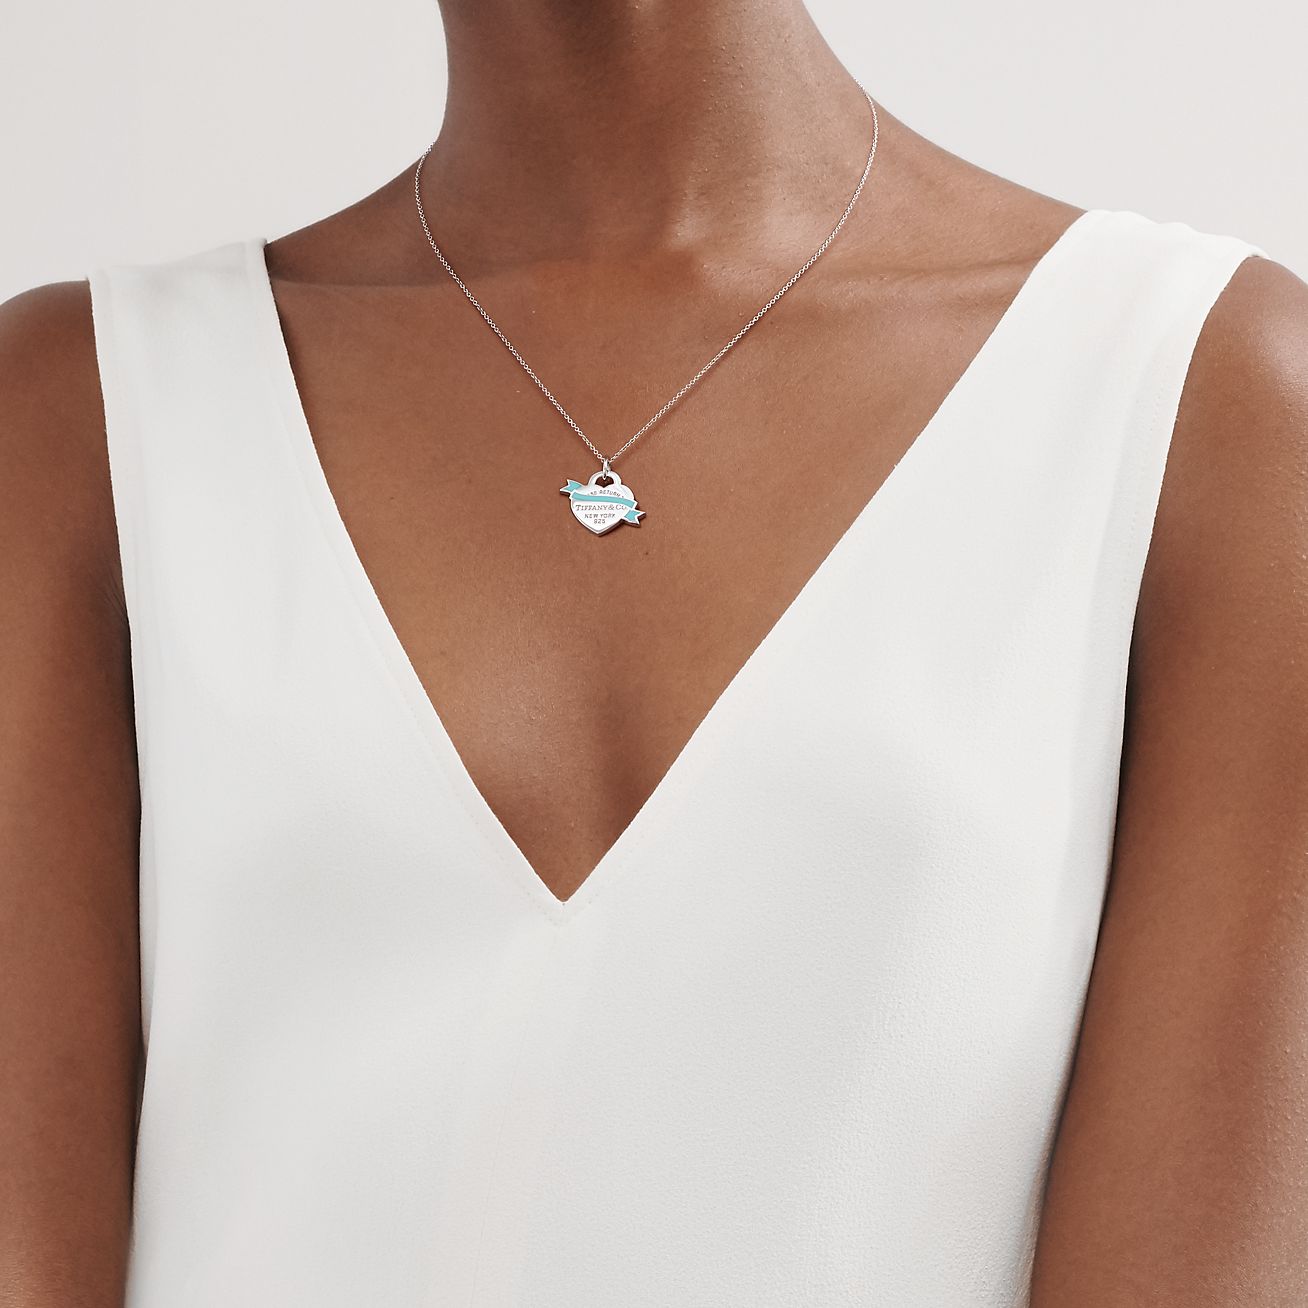 tiffany small blue heart necklace